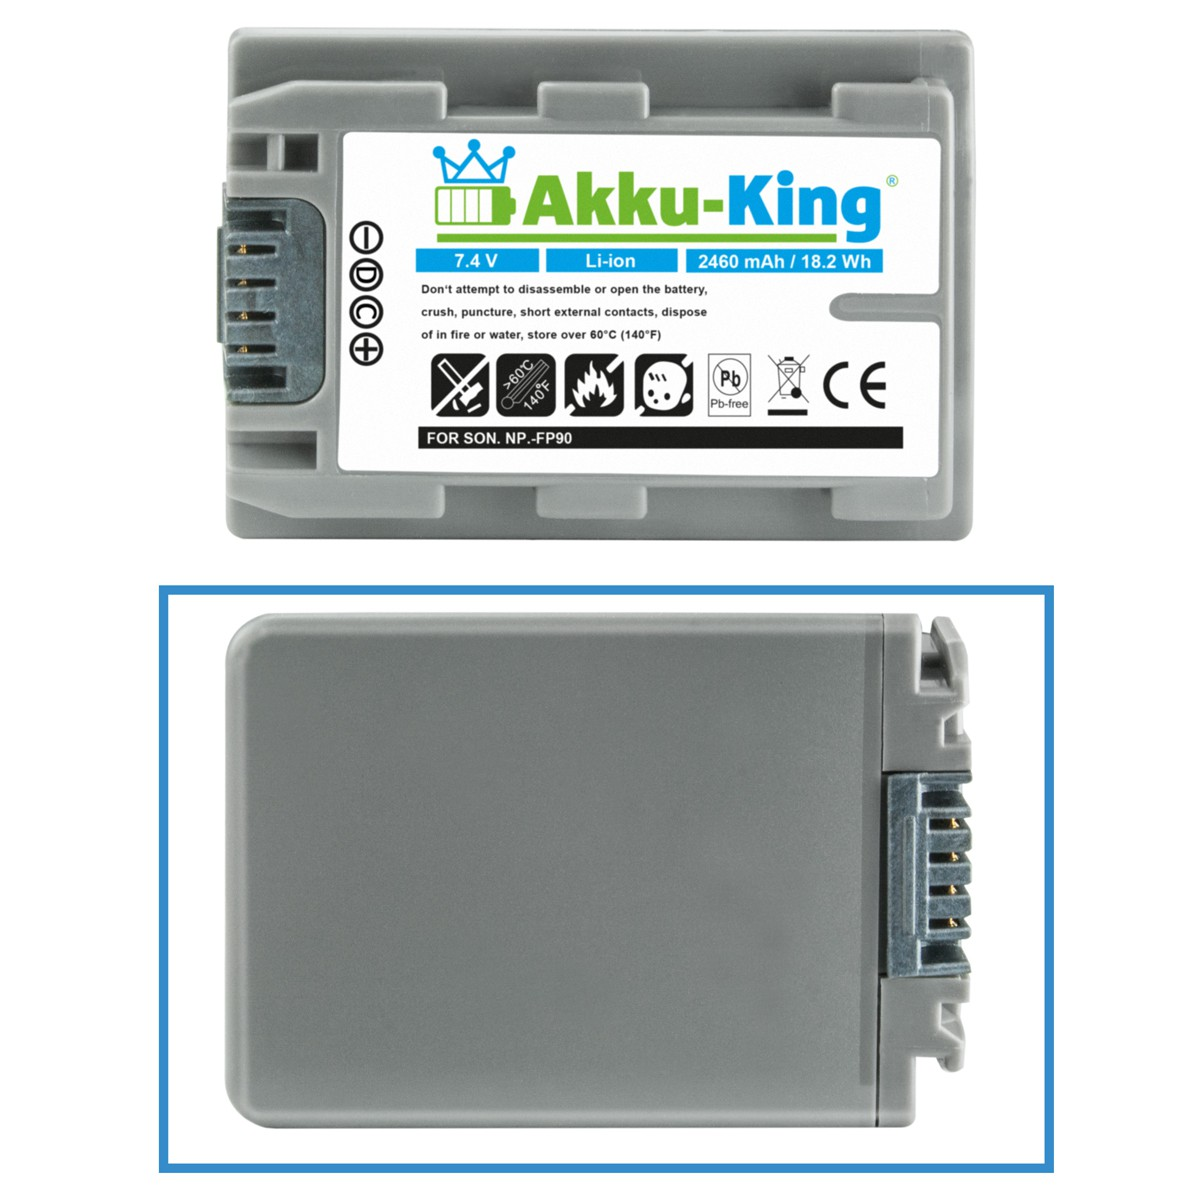 AKKU-KING Akku kompatibel mit Sony Kamera-Akku, 7.4 NP-FP90 Li-Ion Volt, 2460mAh